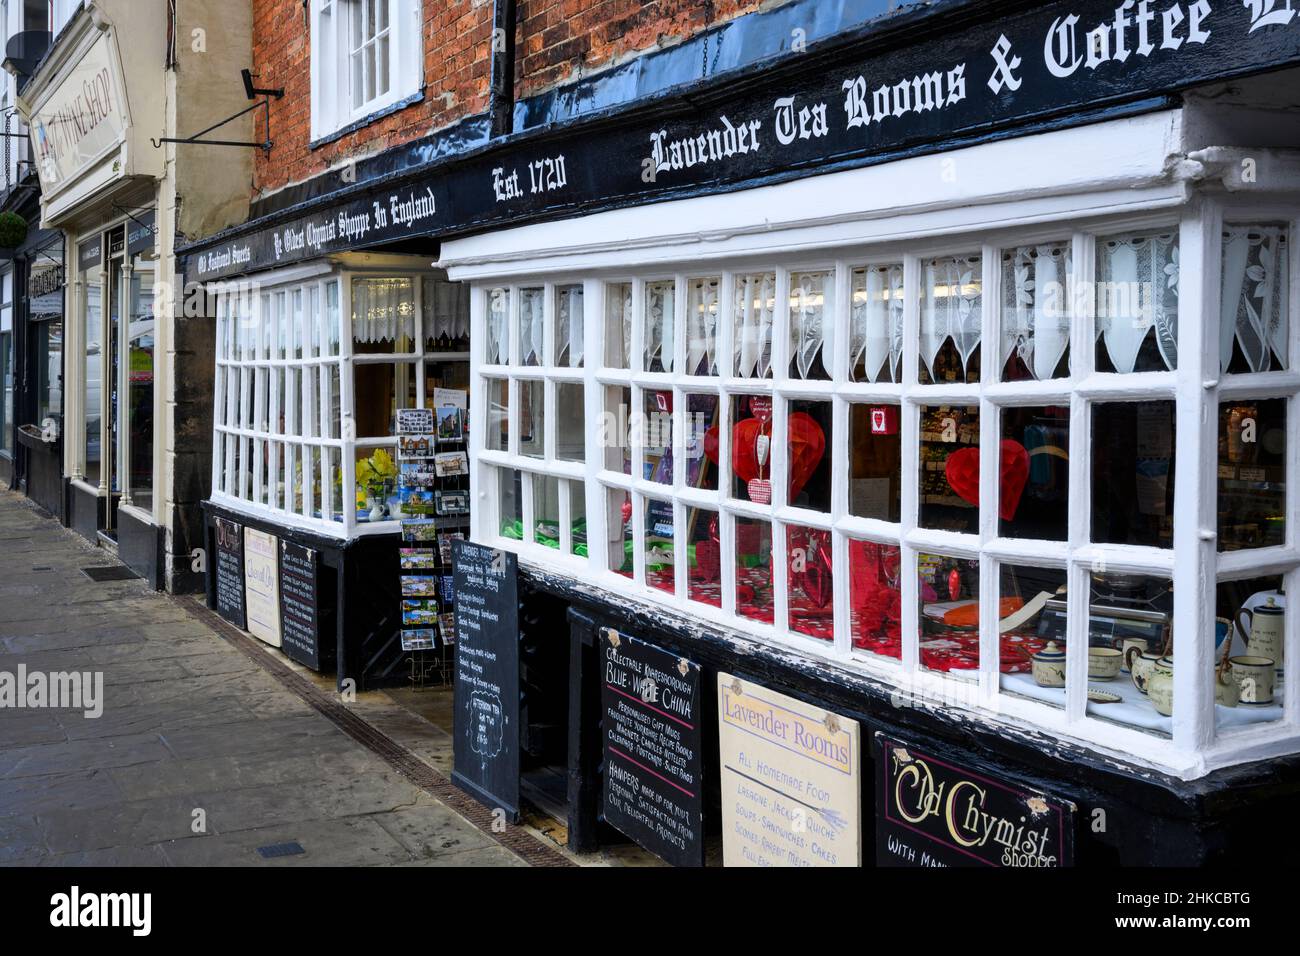 Boutique historique pittoresque et salons de thé (vitrine, panneaux publicitaires à l'extérieur) - Knaresborough, North Yorkshire, Angleterre, Royaume-Uni. Banque D'Images